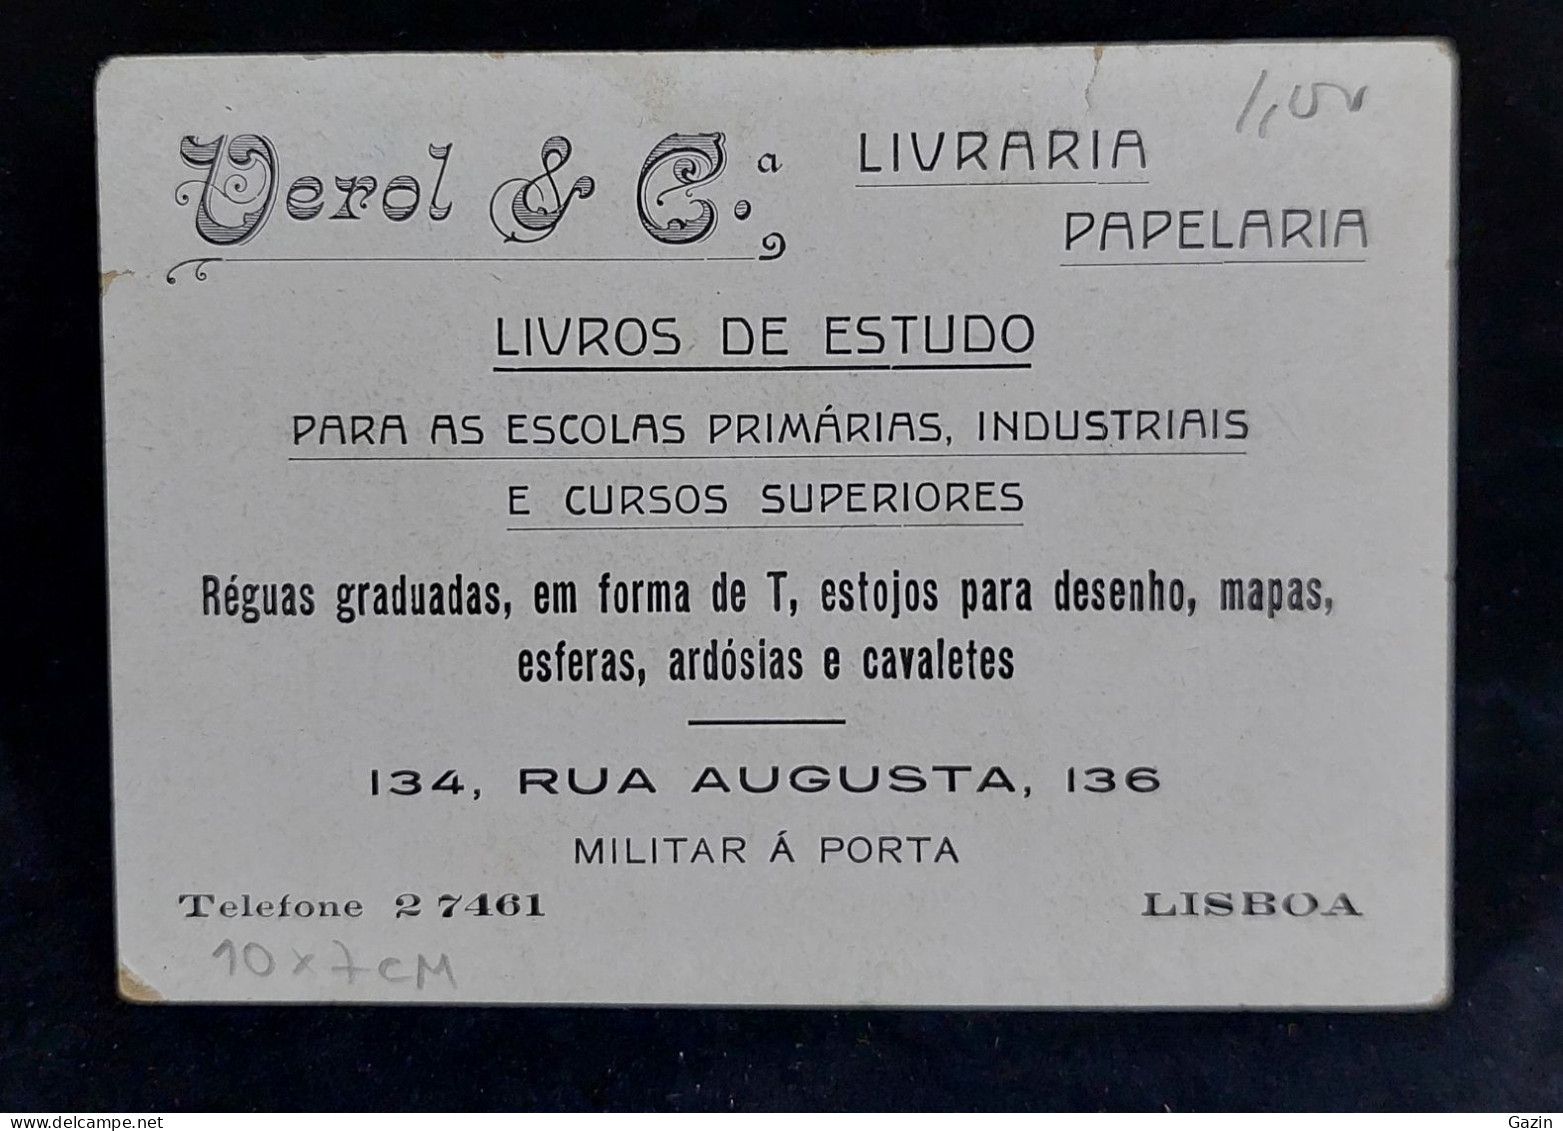 C6/11 - Publicidade * Verol & Cª - Livraria / Papelaria * Lisboa * Portugal - Portugal